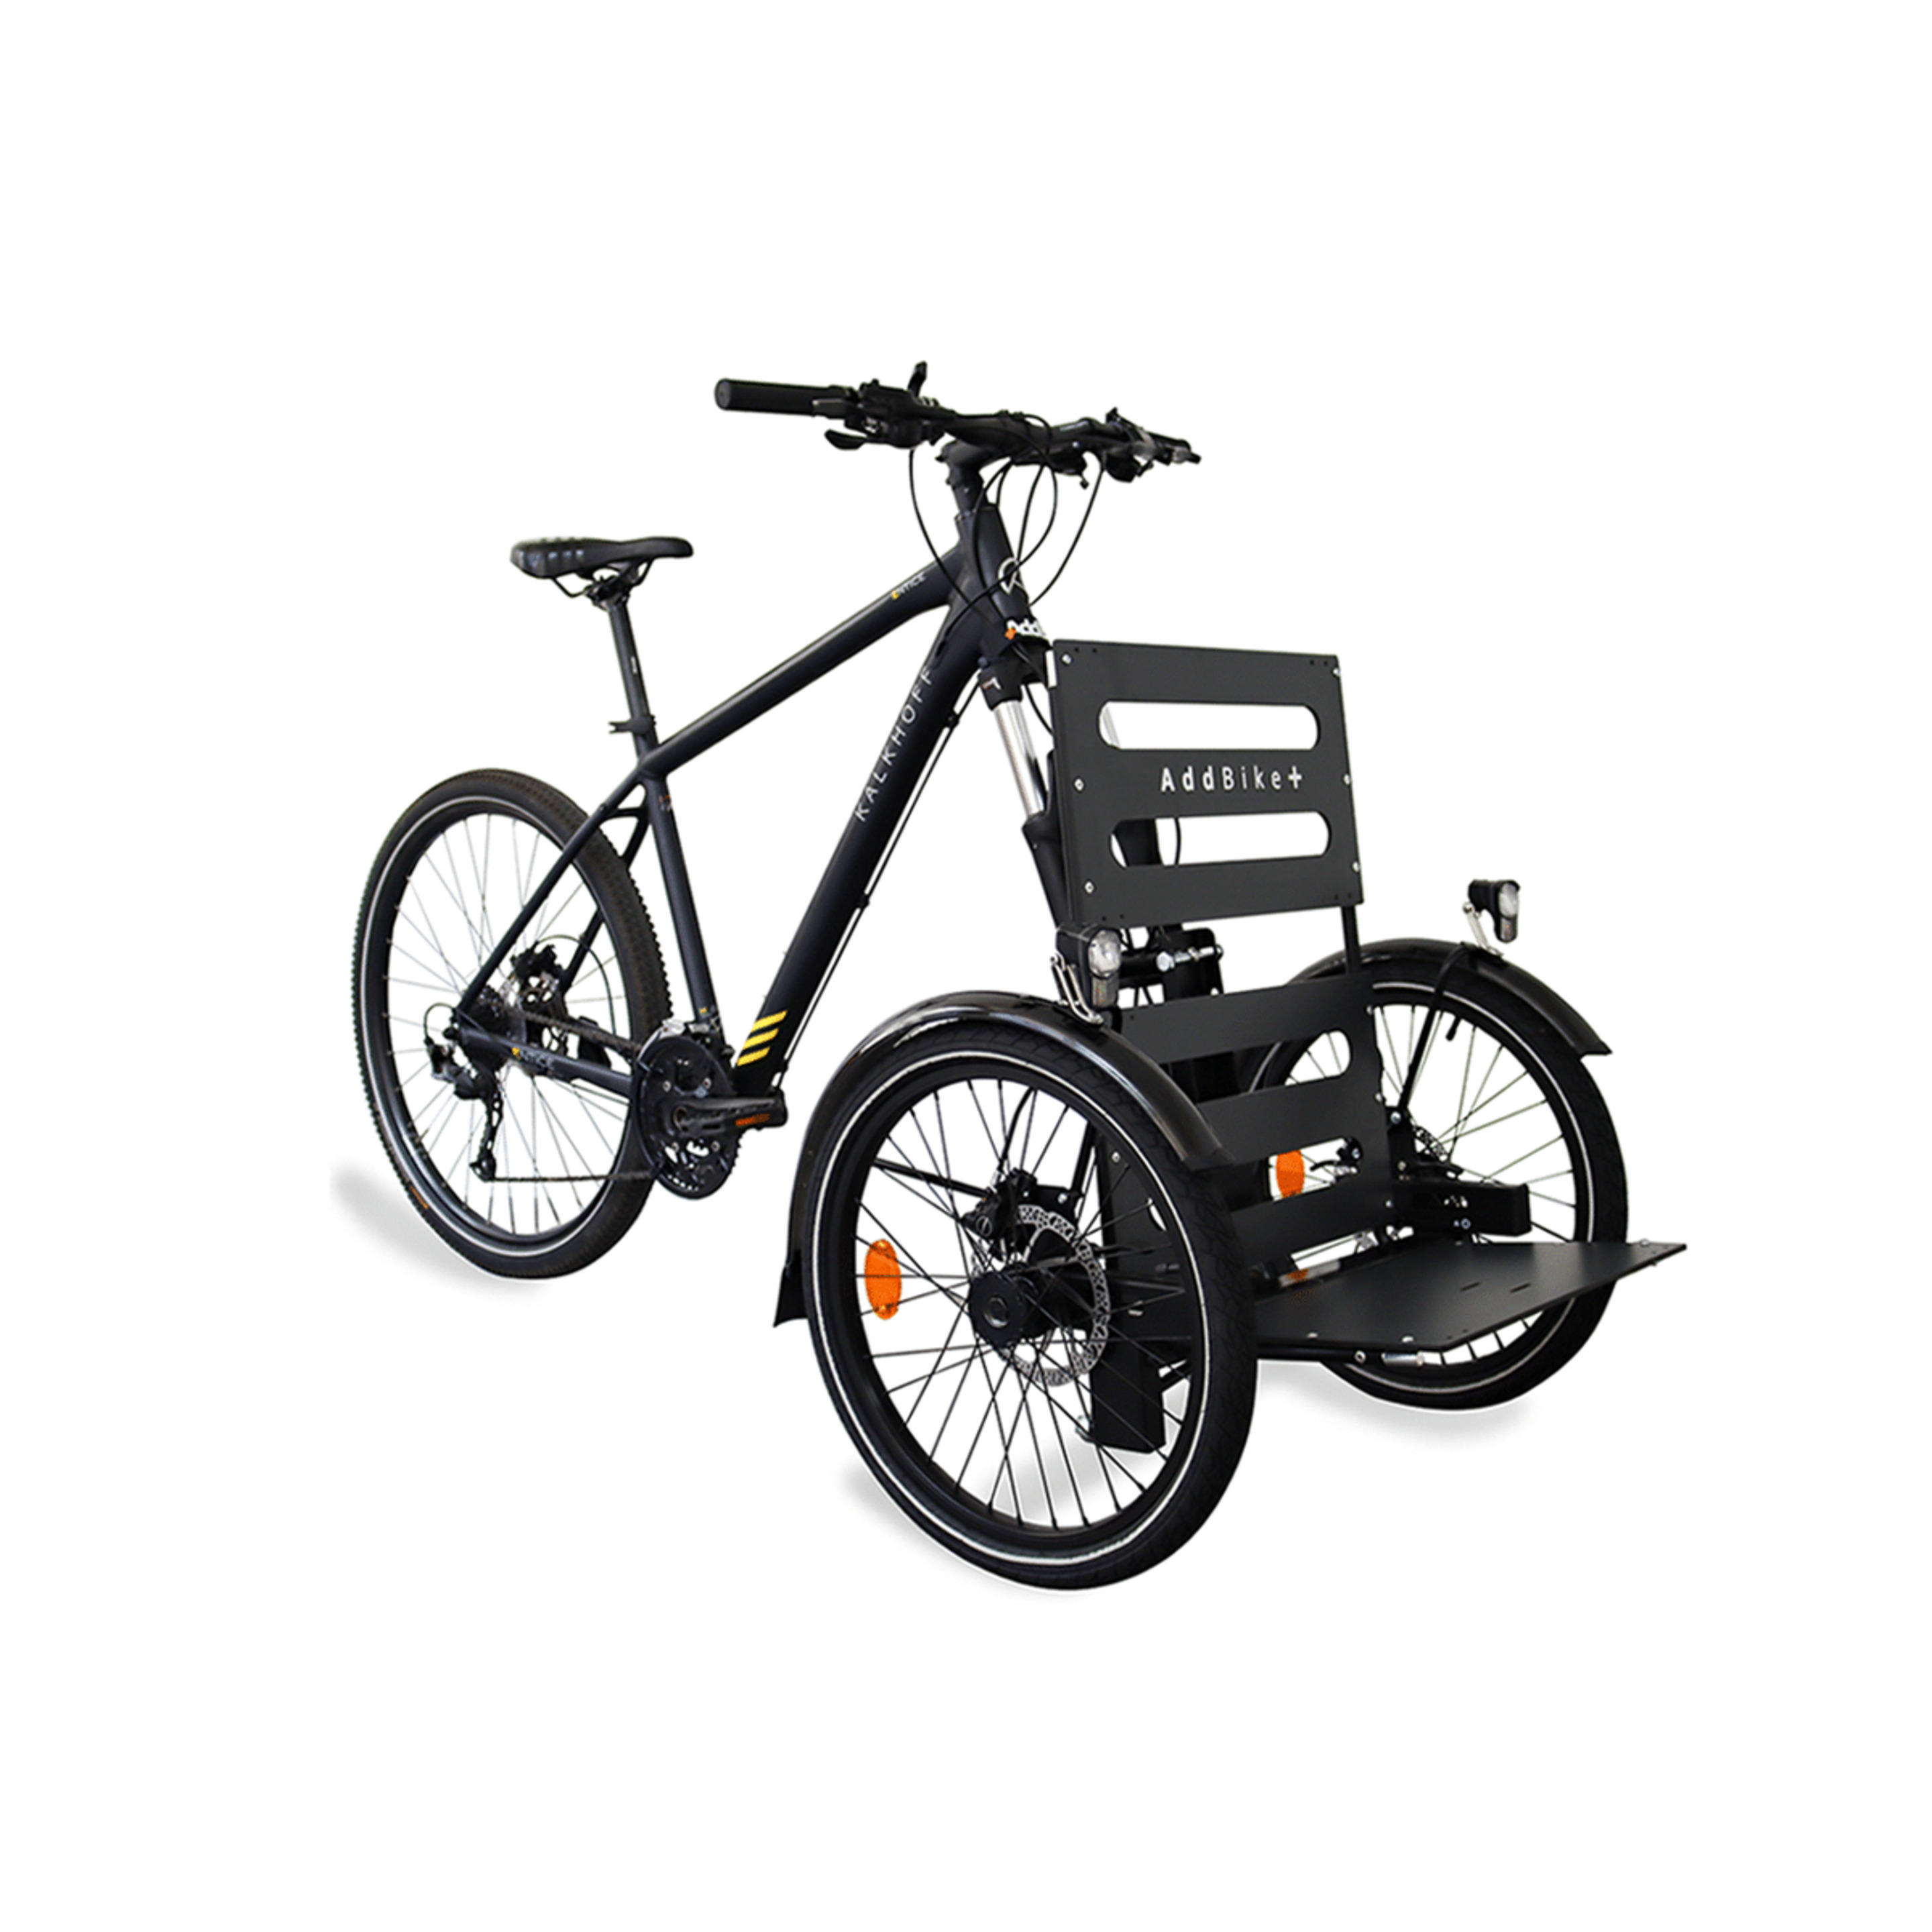 Kit De Reboque De Bicicleta Frontal - Addbike Addbike+ - gris-negro - 